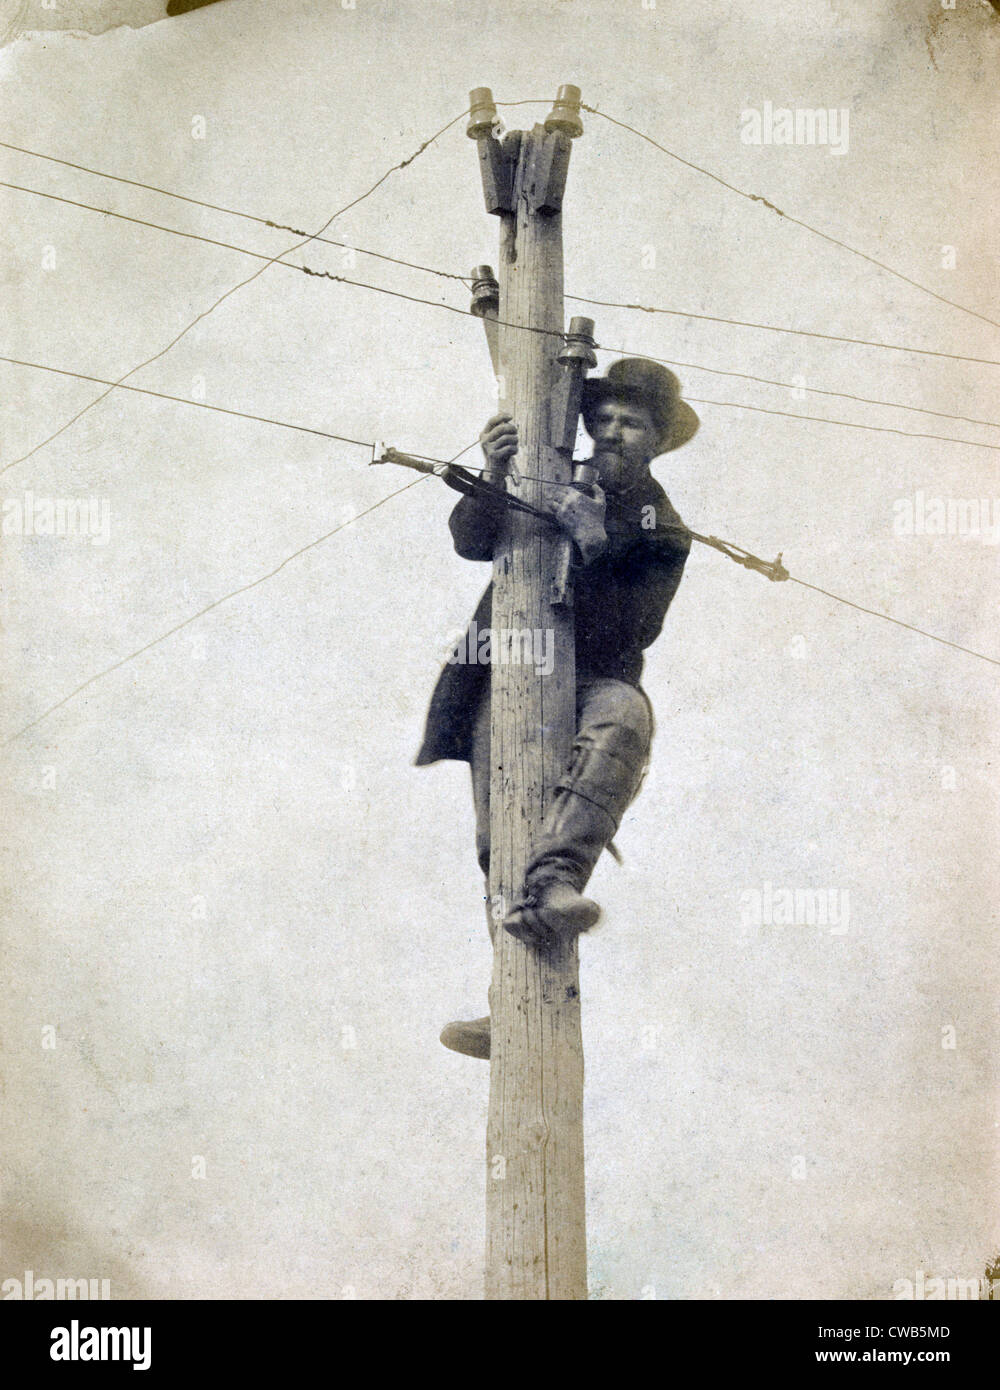 La guerre civile. La réparation des travailleurs ligne de télégraphe. Andrew Russell, photographe, ca. 1862-1863 Banque D'Images